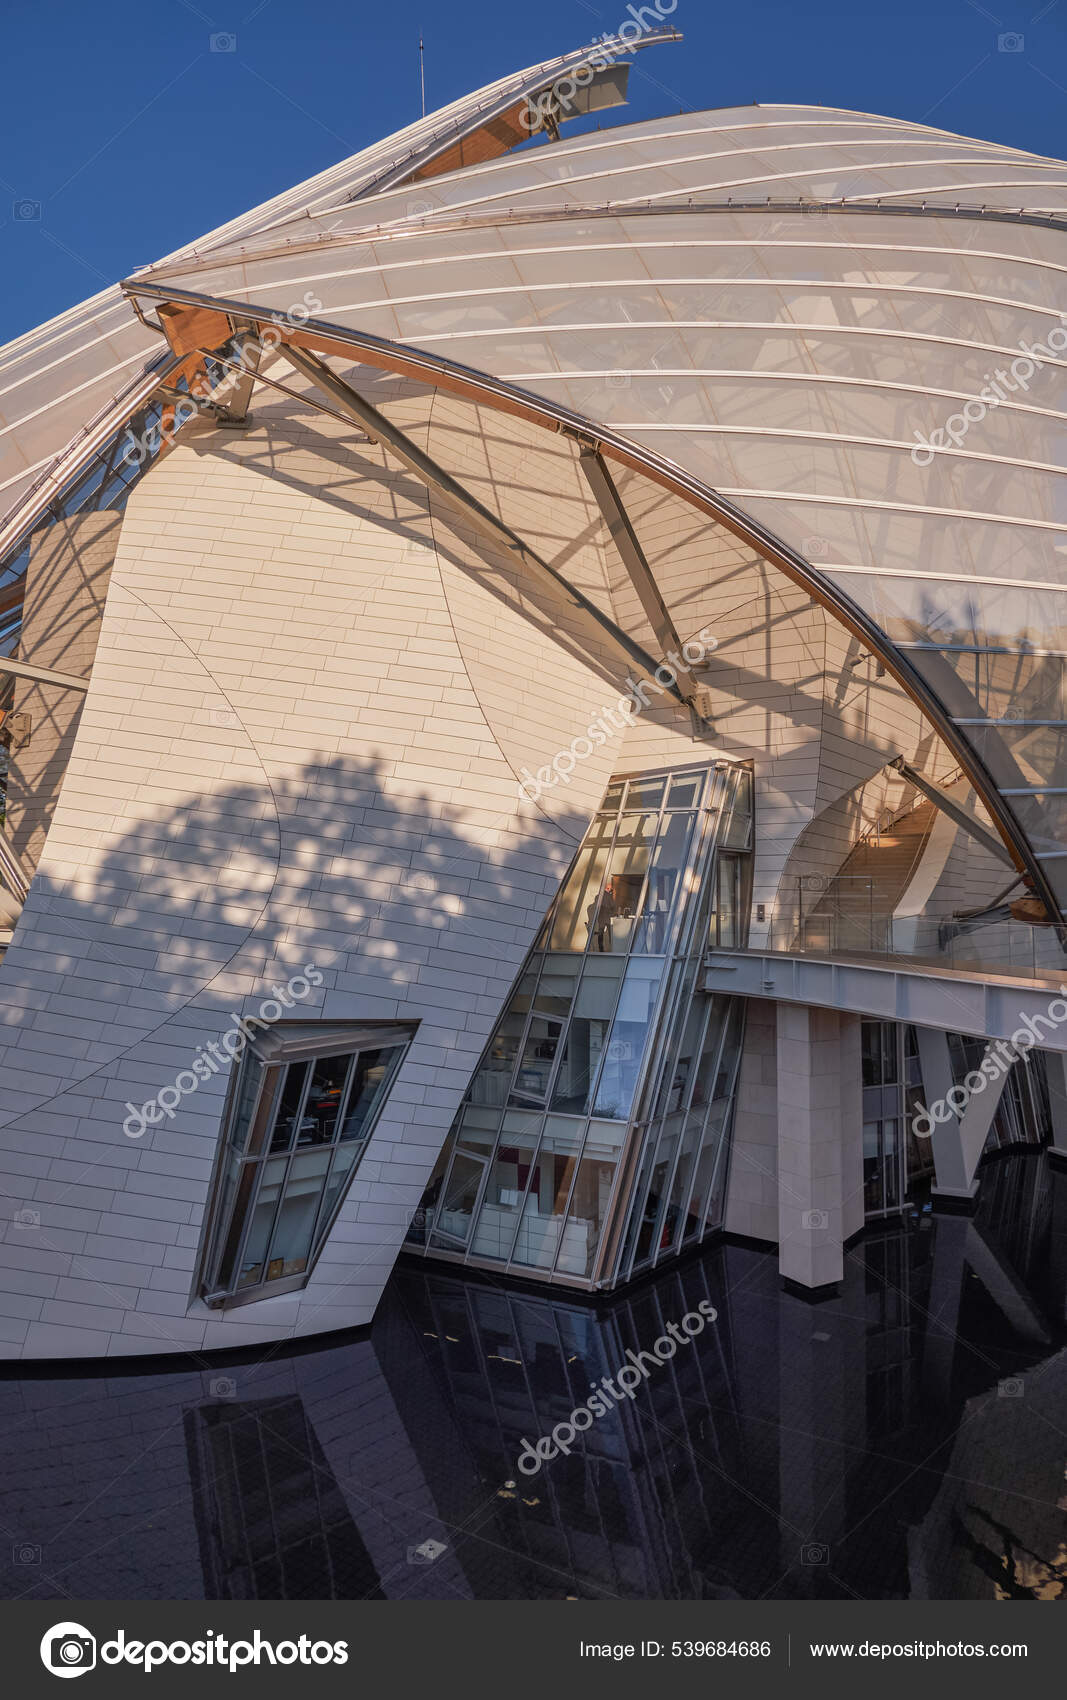 Frank Gehry: Fondation Louis Vuitton Paris - An Architect's